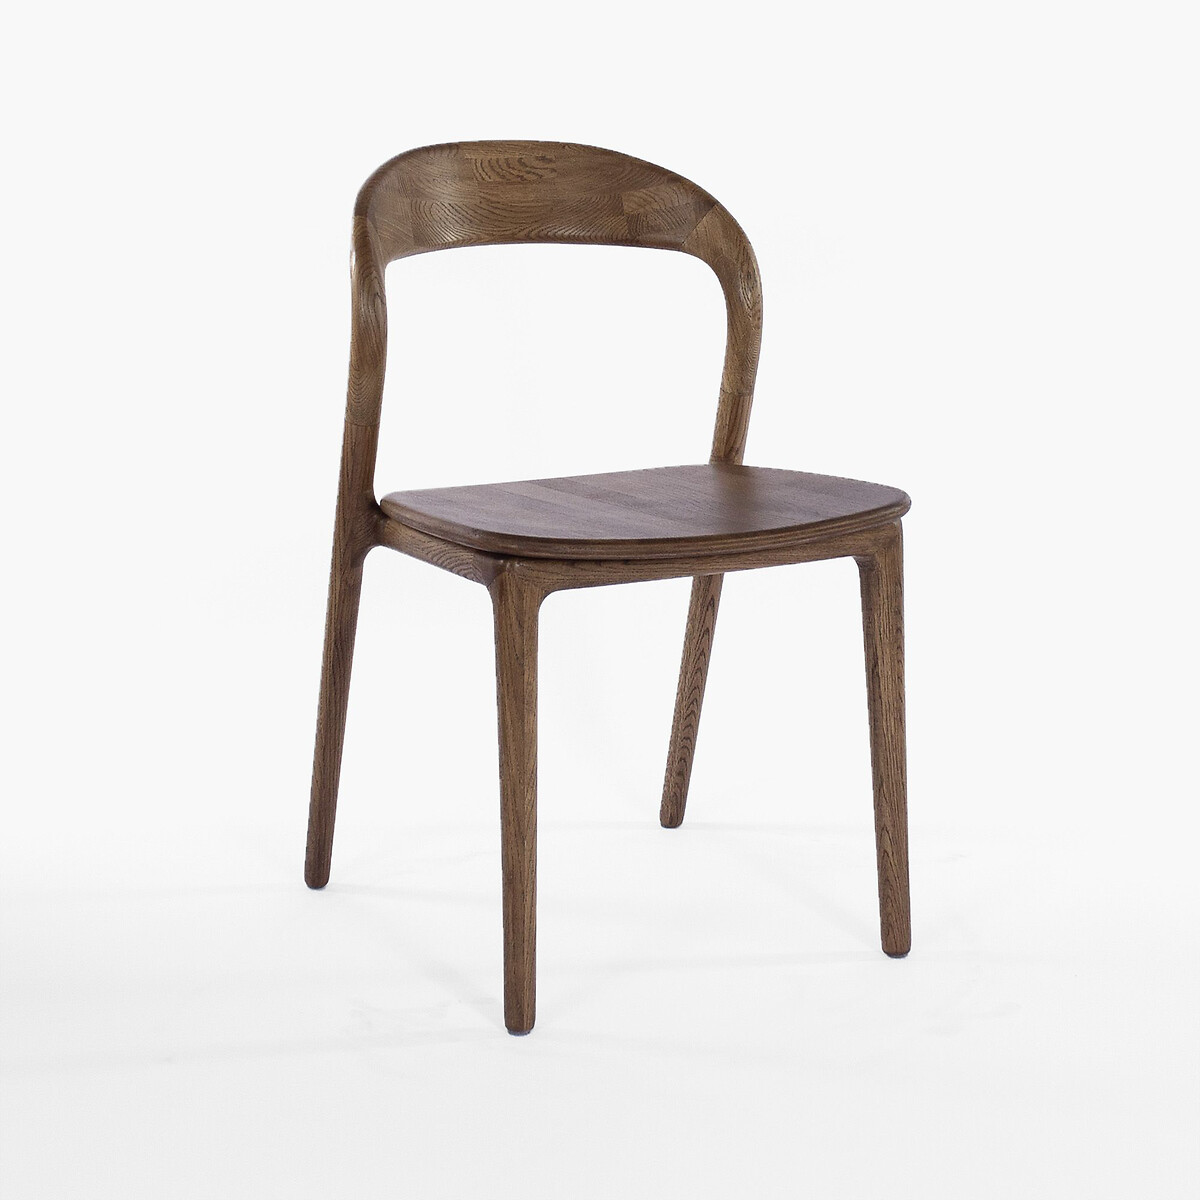 Стул Лугано единый размер каштановый стул лотос массив дуба белый тканьбелый белый массив дуба